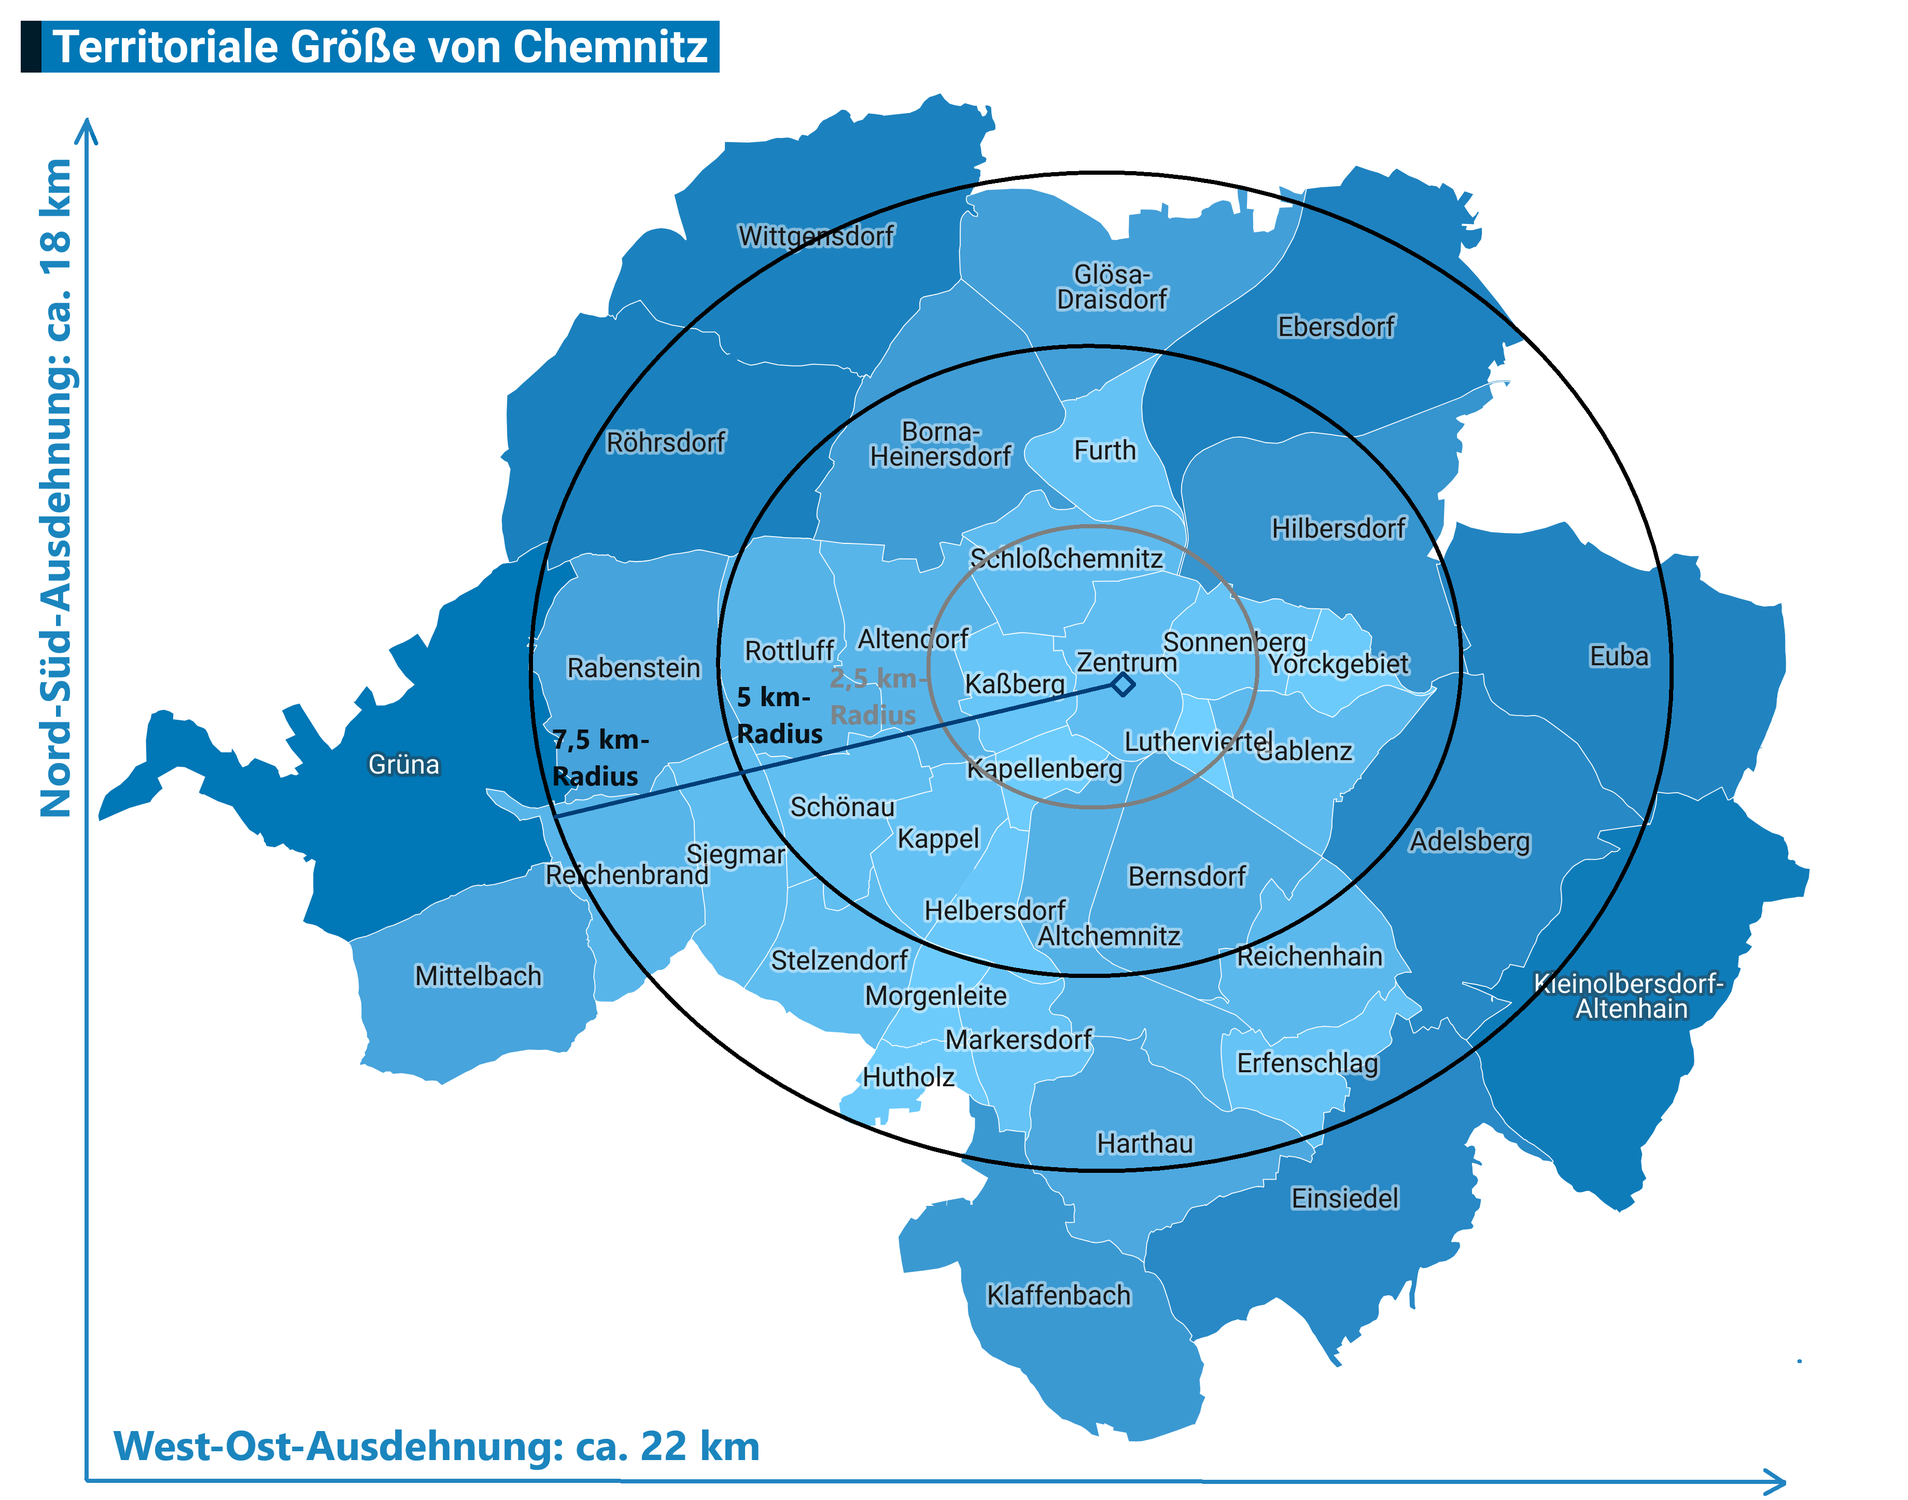 Chemnitz - "Territoriale Betrachtungen" zur Größe der Stadt